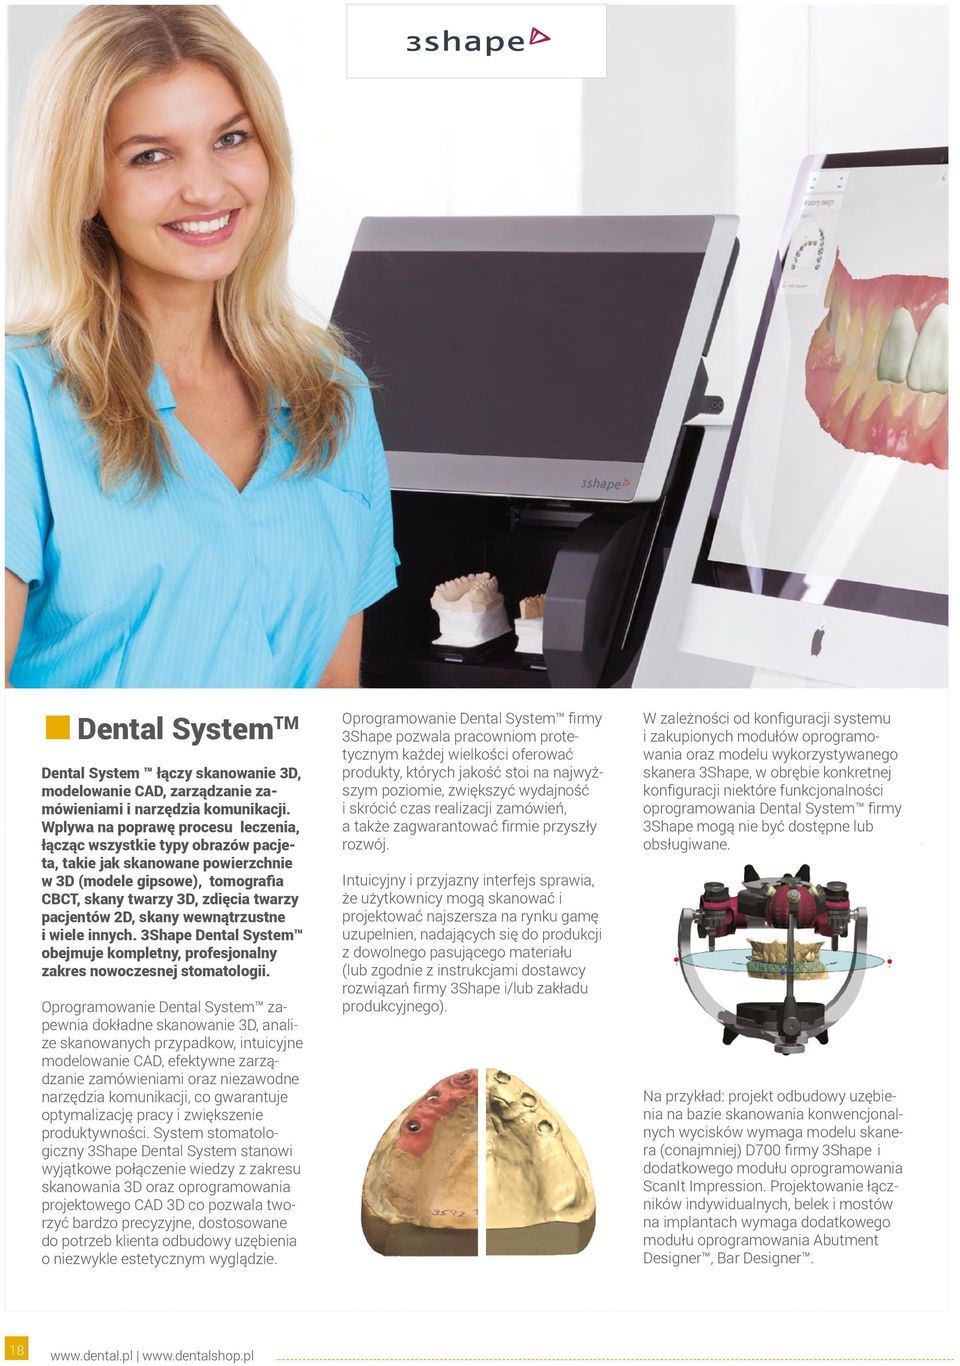 wewnątrzustne i wiele innych. 3Shape Dental System obejmuje kompletny, profesjonalny zakres nowoczesnej stomatologii.